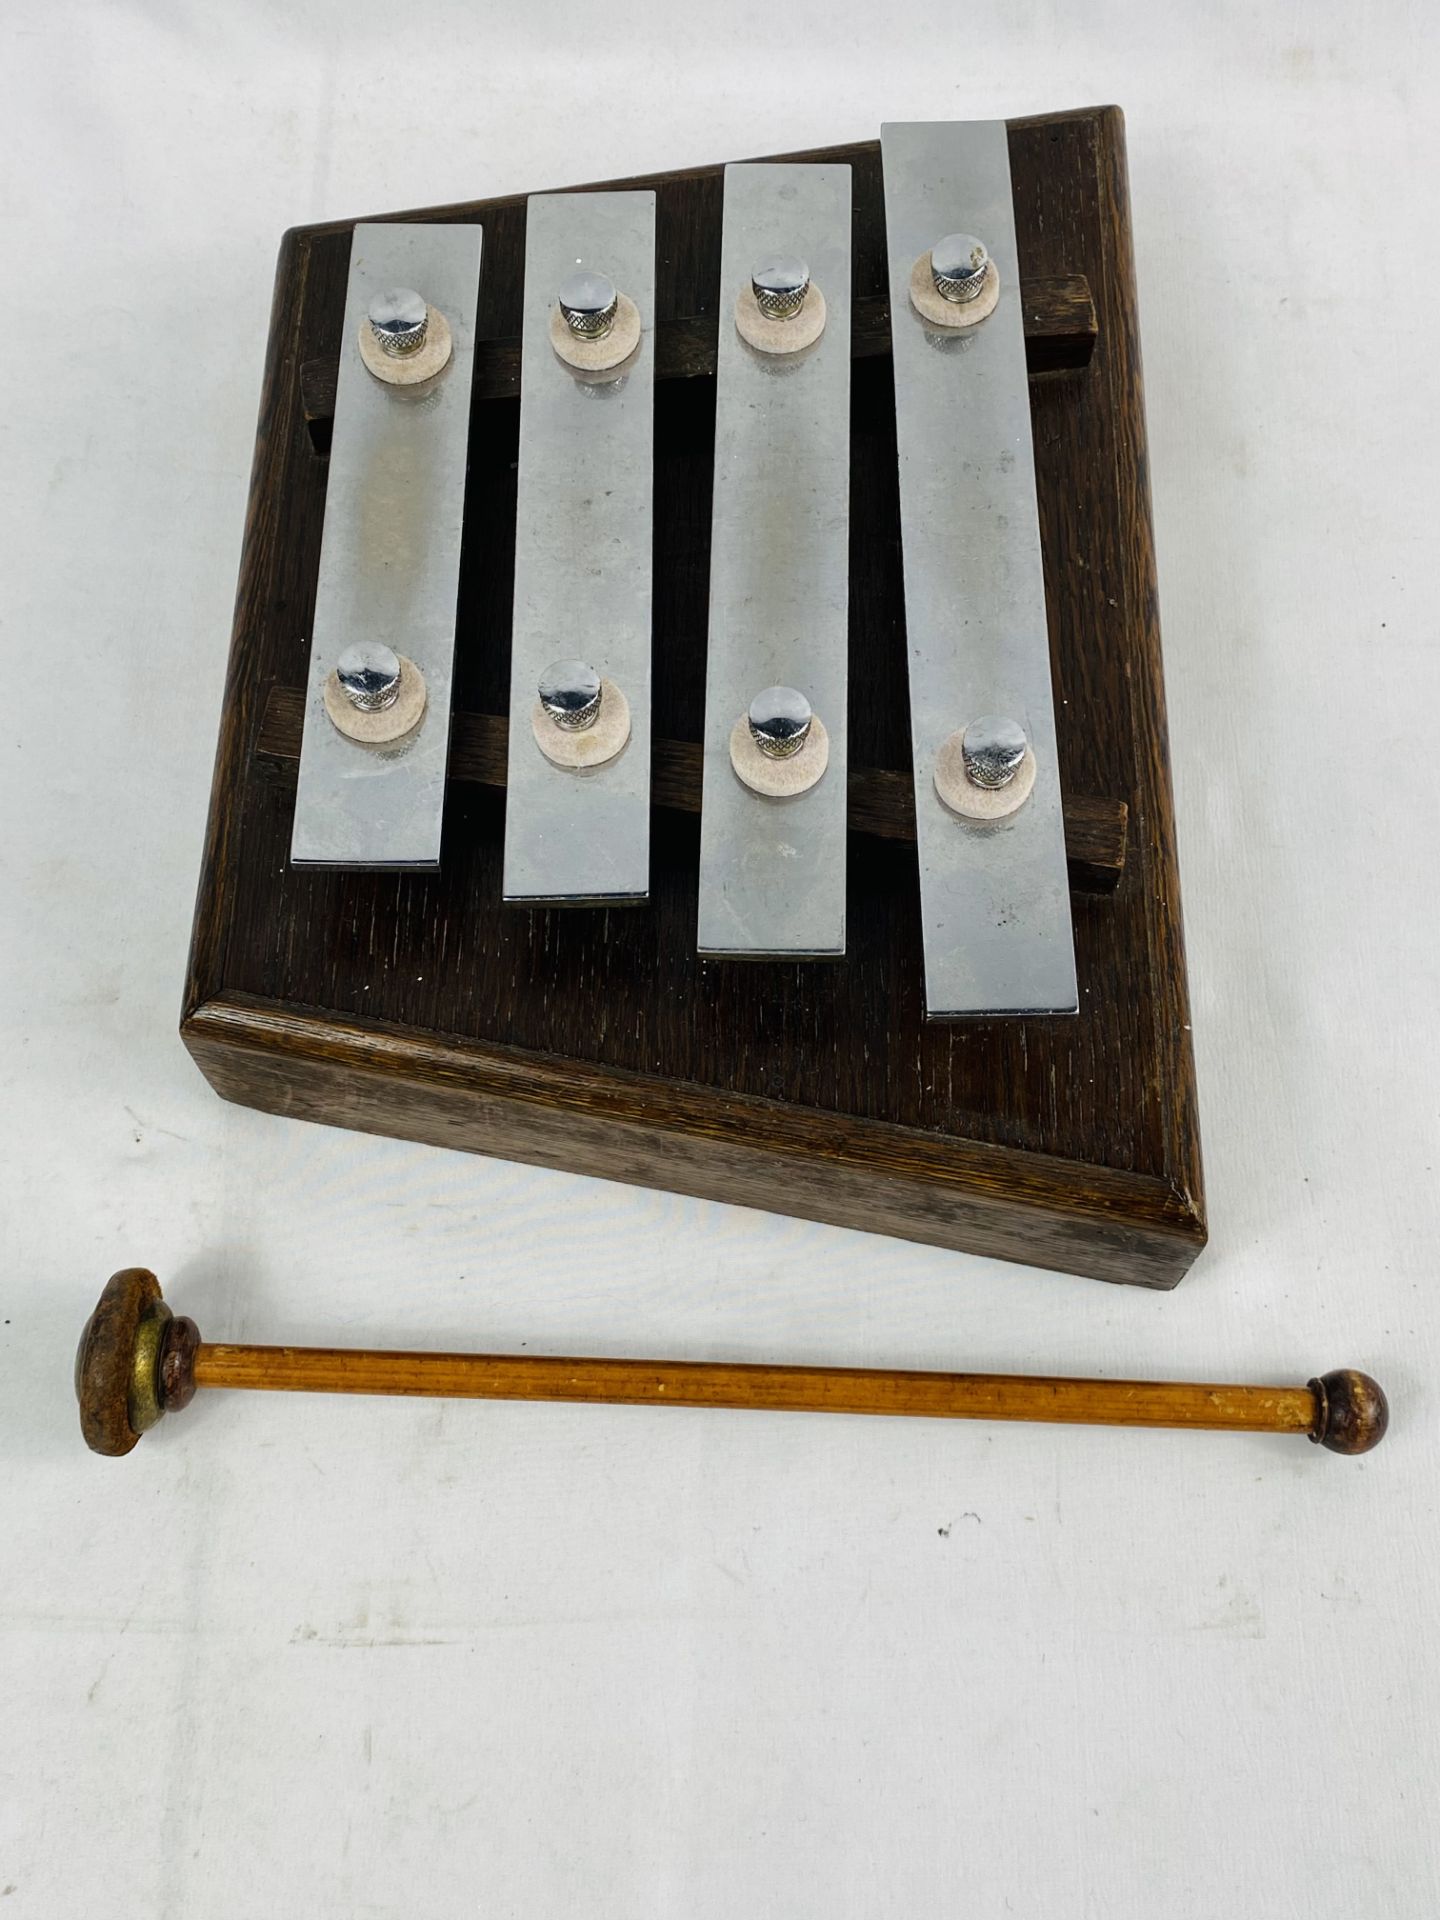 Four key xylophone